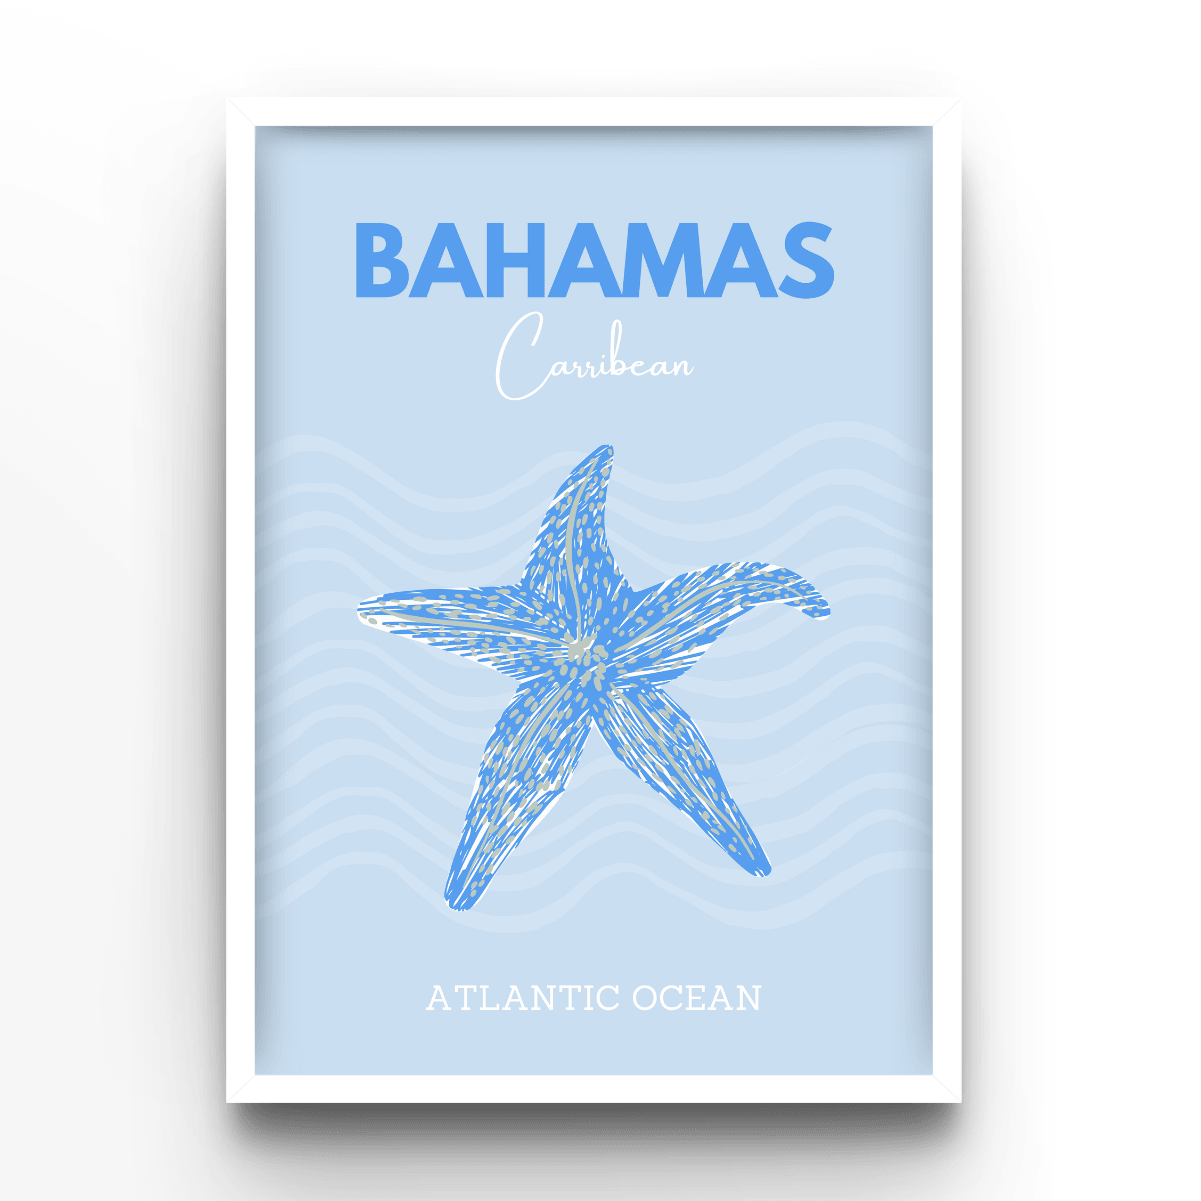 Bahamas - A4, A3, A2 Posters Base - Poster Print Shop / Art Prints / PostersBase